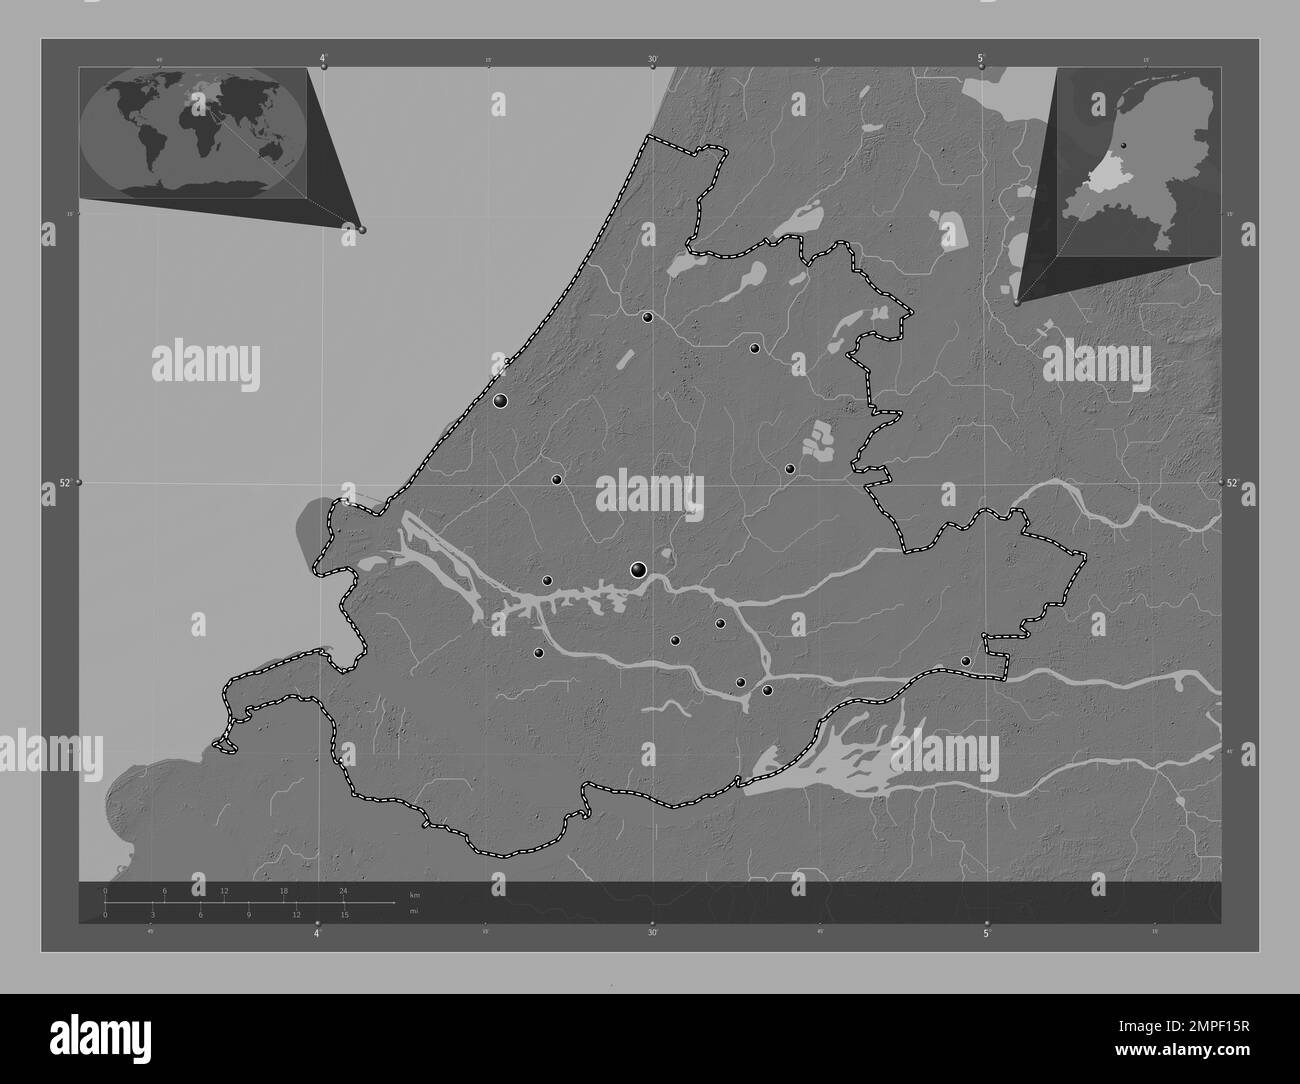 Zuid-Holland, niederländische Provinz. Bilevel-Höhenkarte mit Seen und Flüssen. Standorte der wichtigsten Städte der Region. Lage der Zusatzgeräte an der Ecke Stockfoto